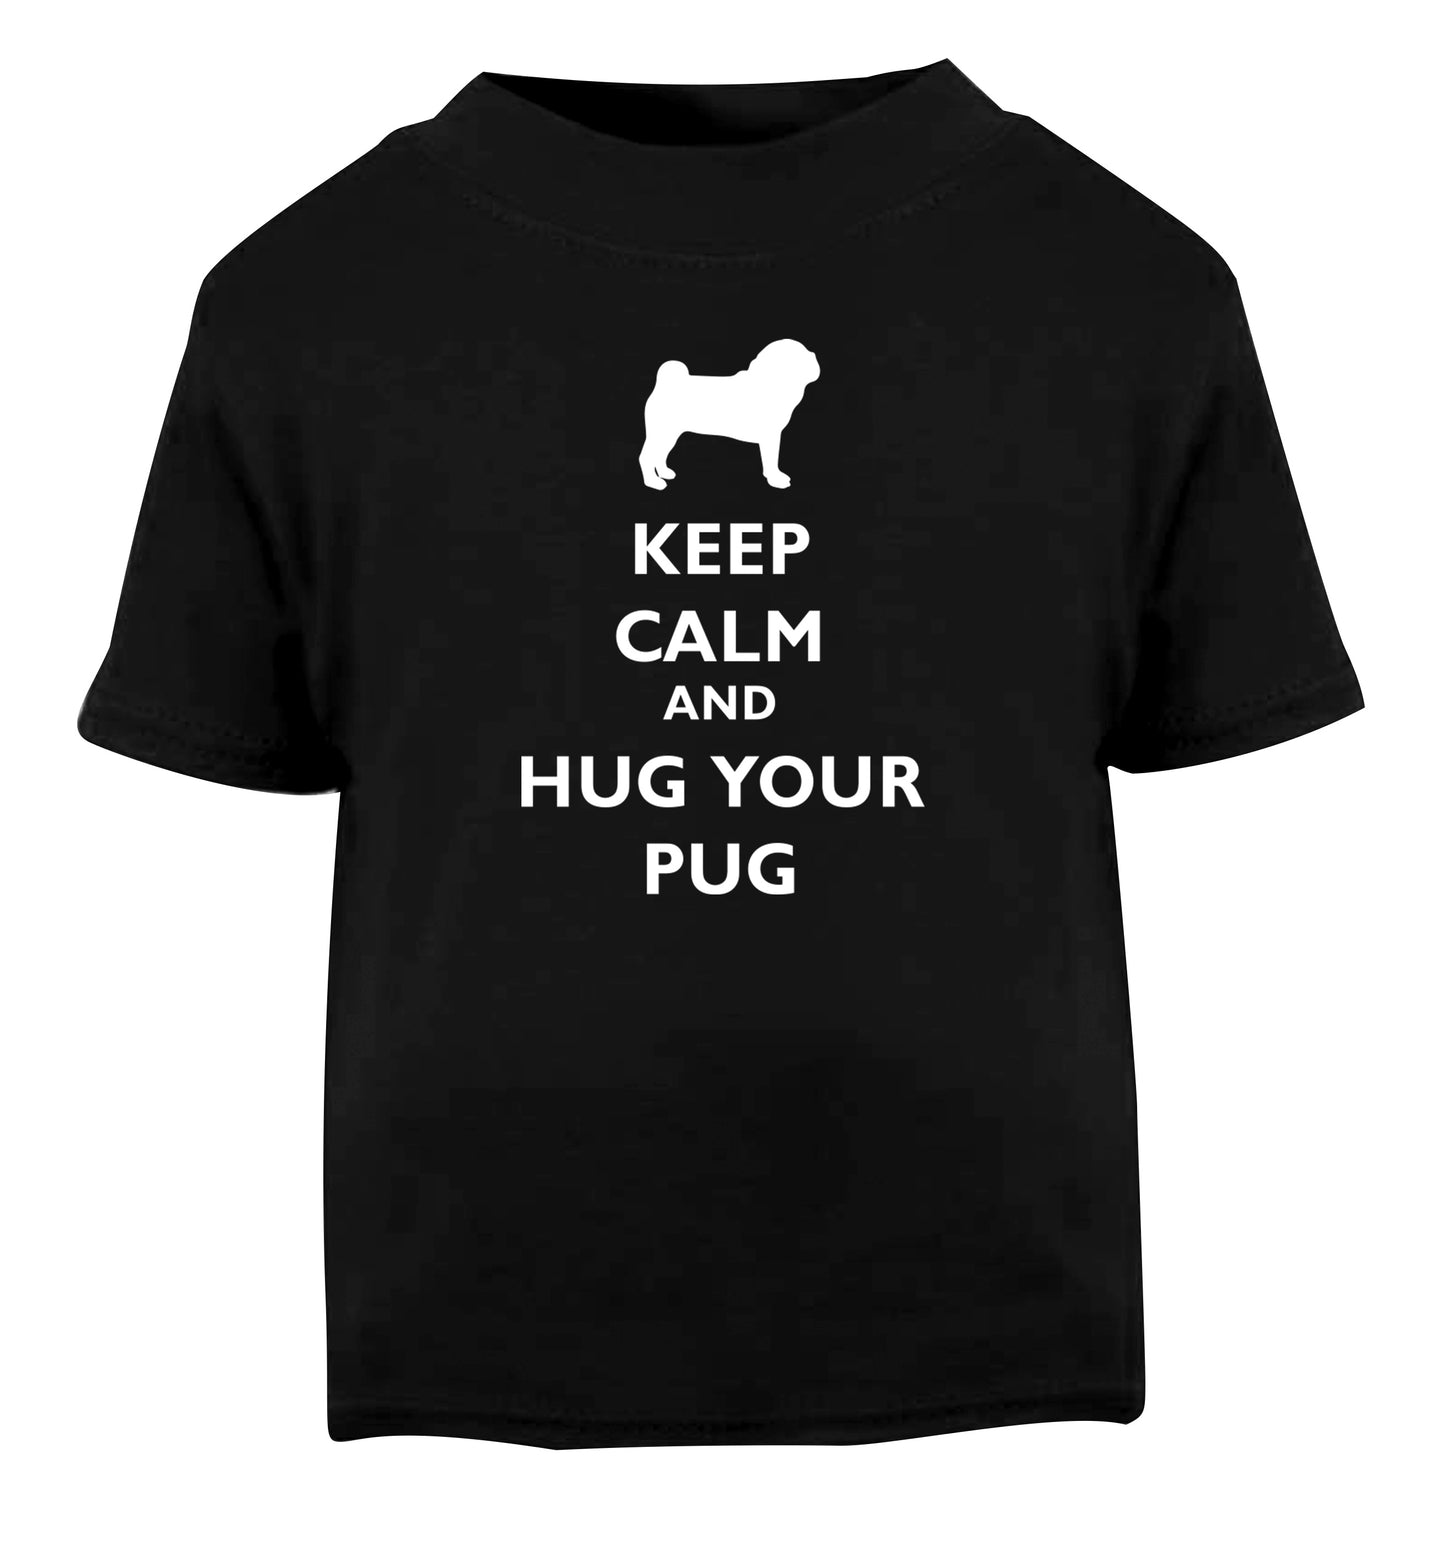 Keep calm and hug your pug Black Baby Toddler Tshirt 2 years